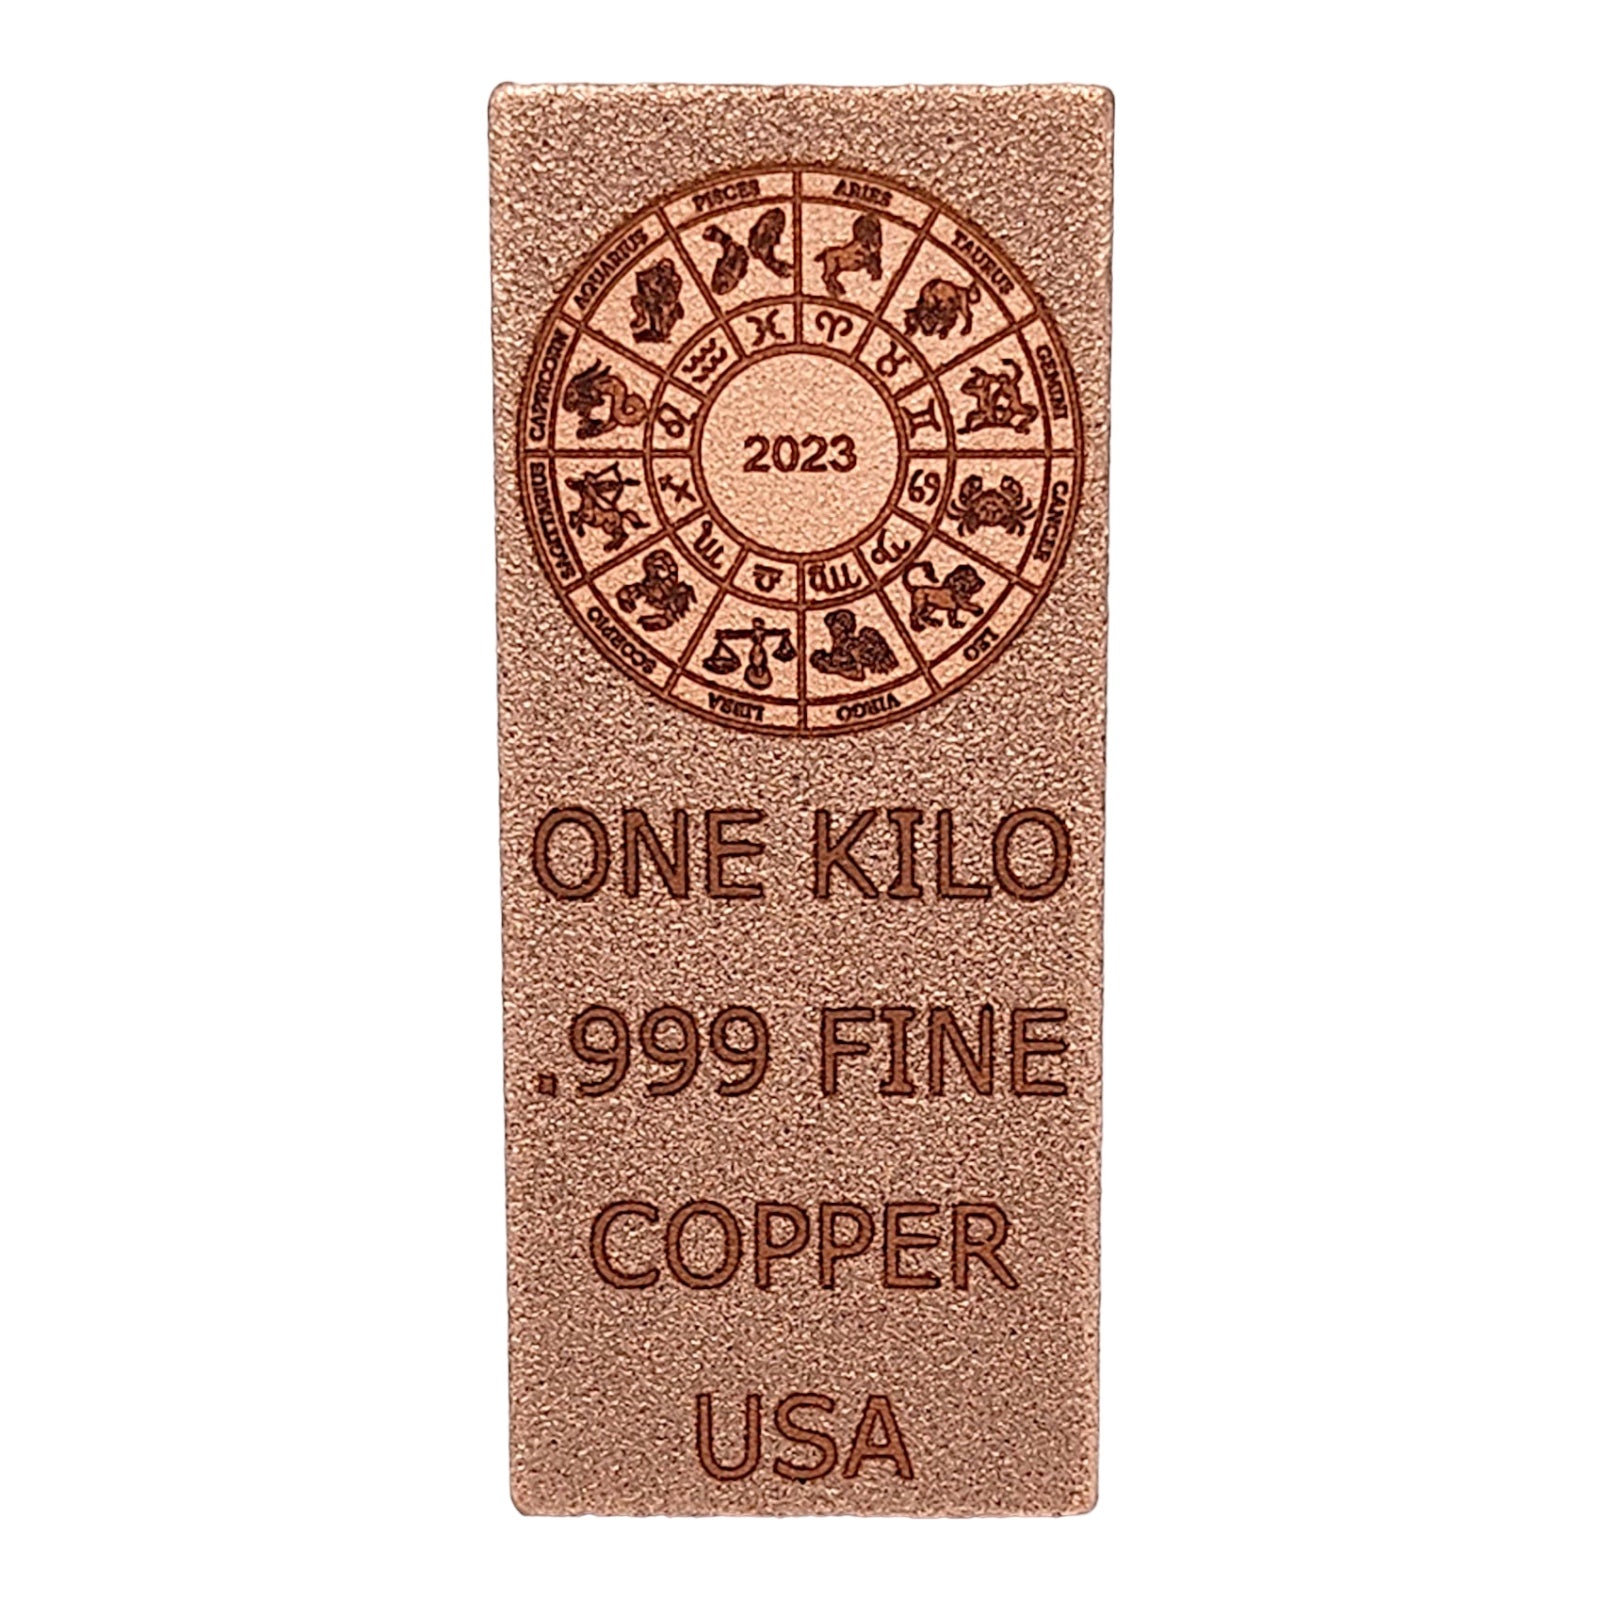 ZODIAC DESIGN - 1 KILO .999 FINE COPPER Bullion by Liberty Copper